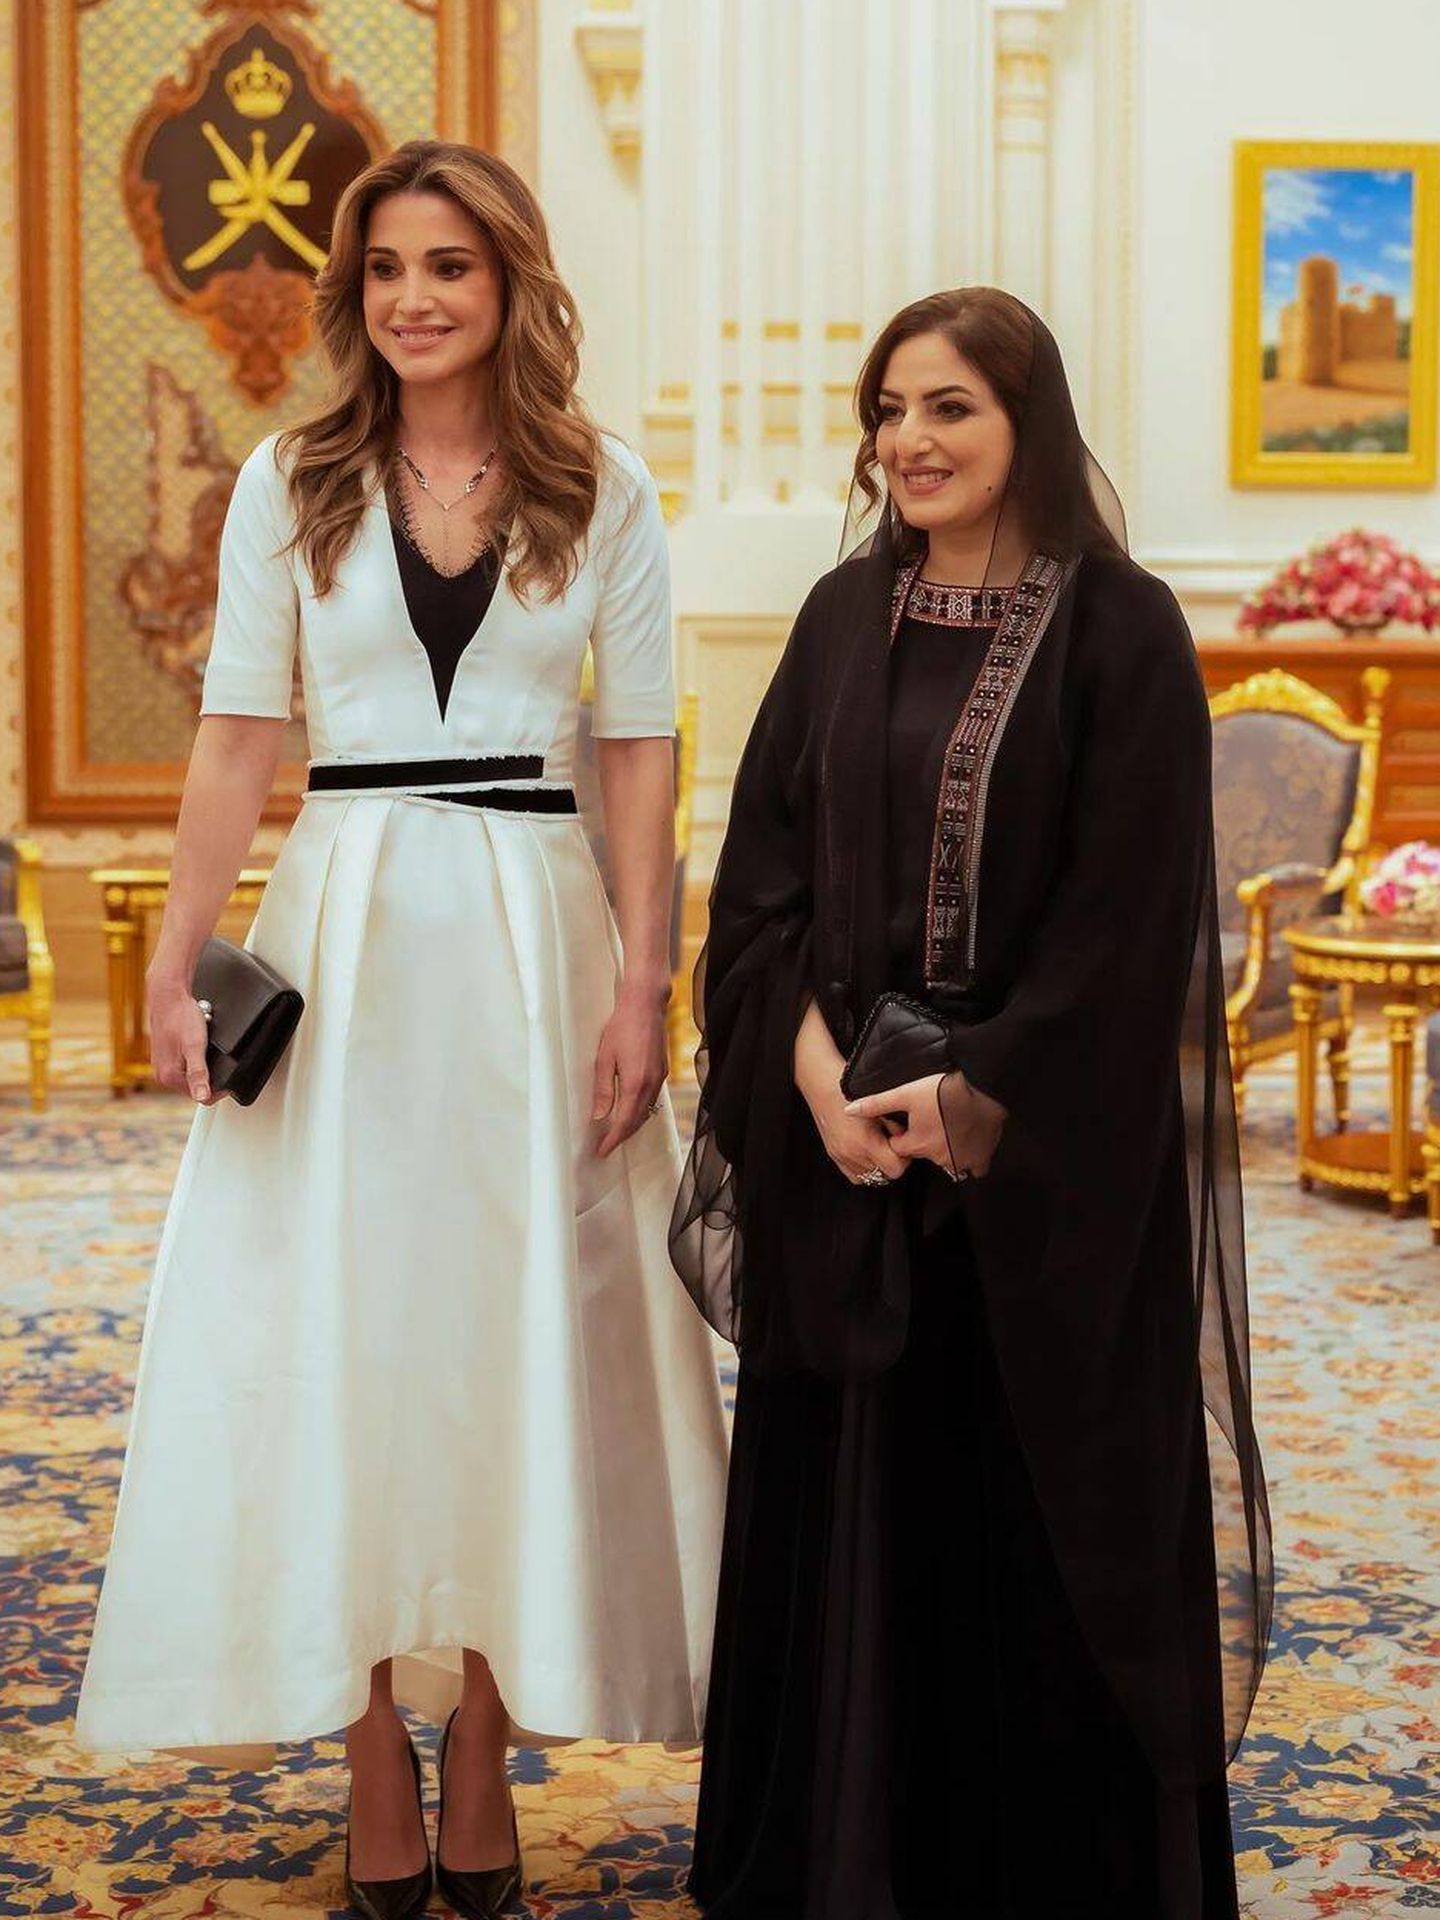 Rania, recibida en el palacio por la mujer del sultán de Omán. (Instagram/@queenrania)